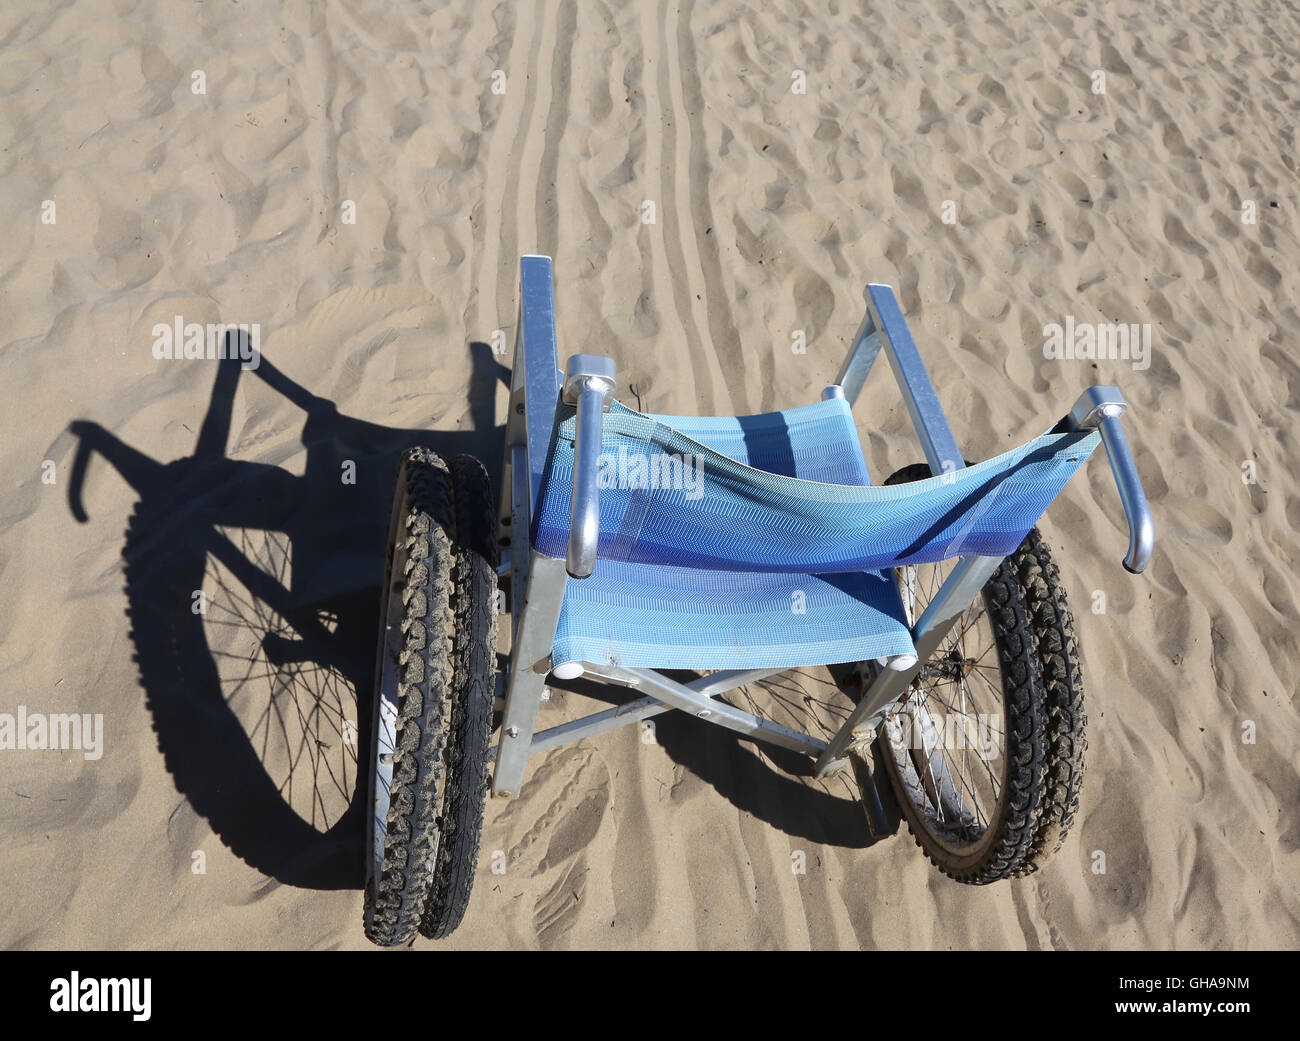 Sedia a rotelle di alluminio sulla sabbia della spiaggia Foto Stock